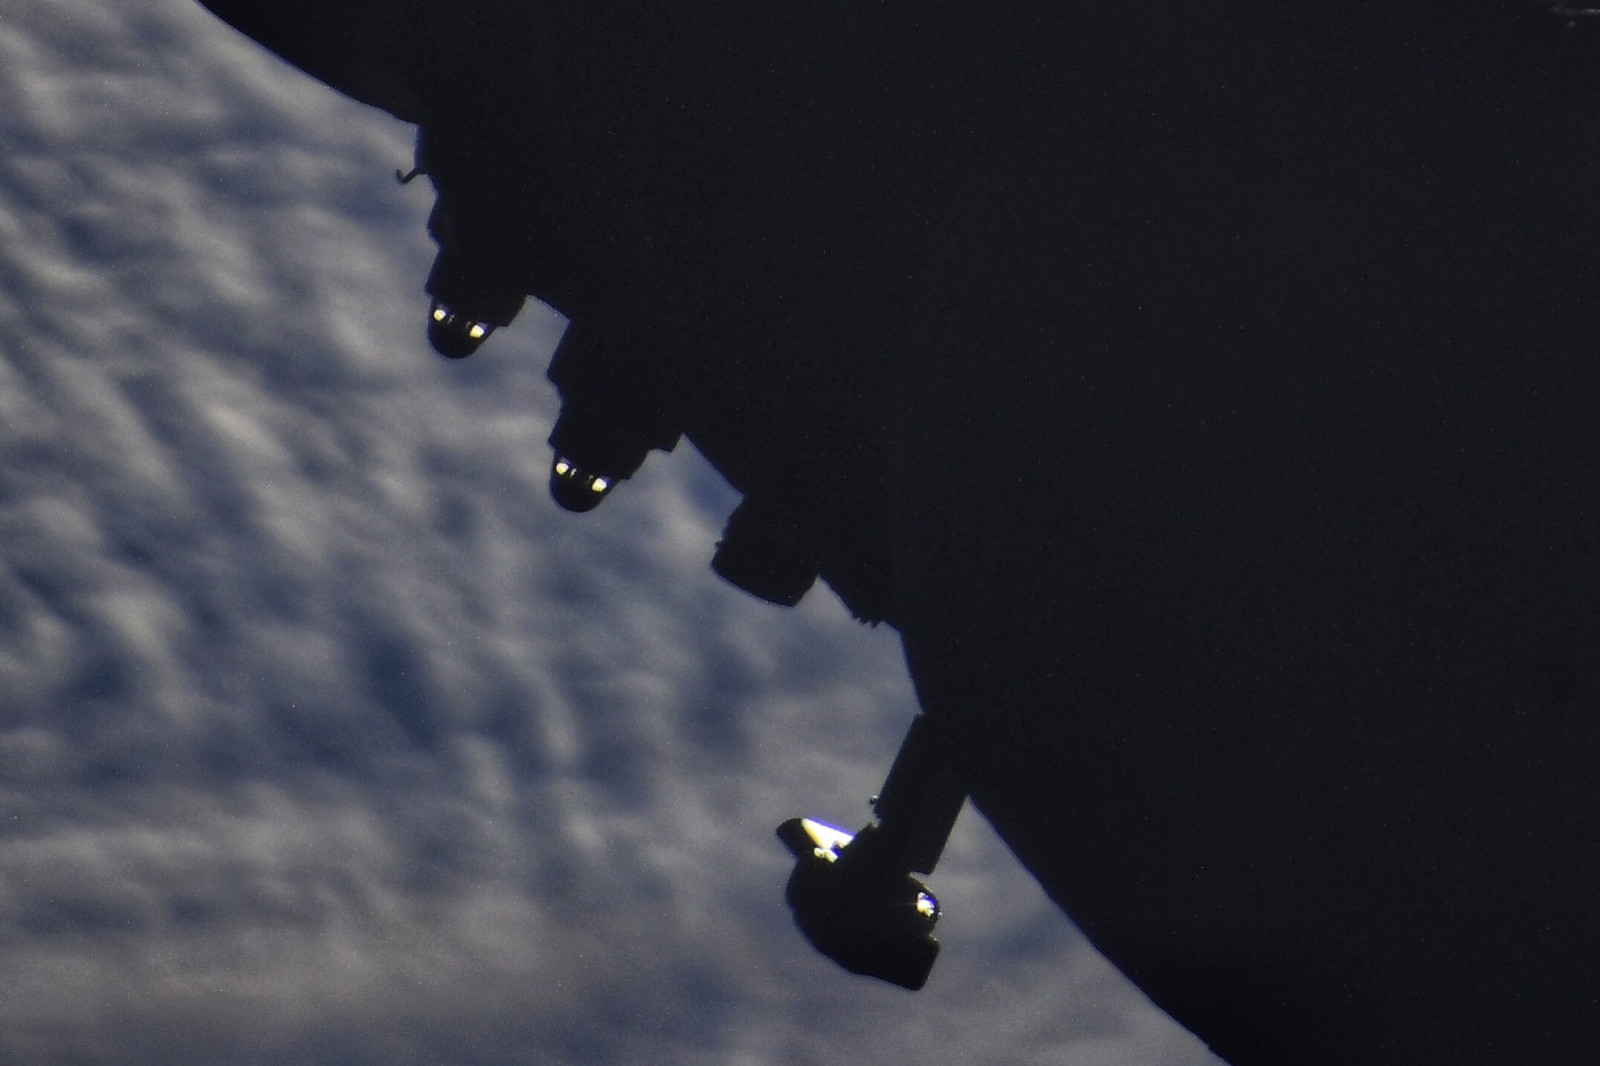 Meral Erden: Milletlerarası Uzay İstasyonundan Görülen, Uzaydaki Bu Gizemli Gözler Kime Ilişkin? 1